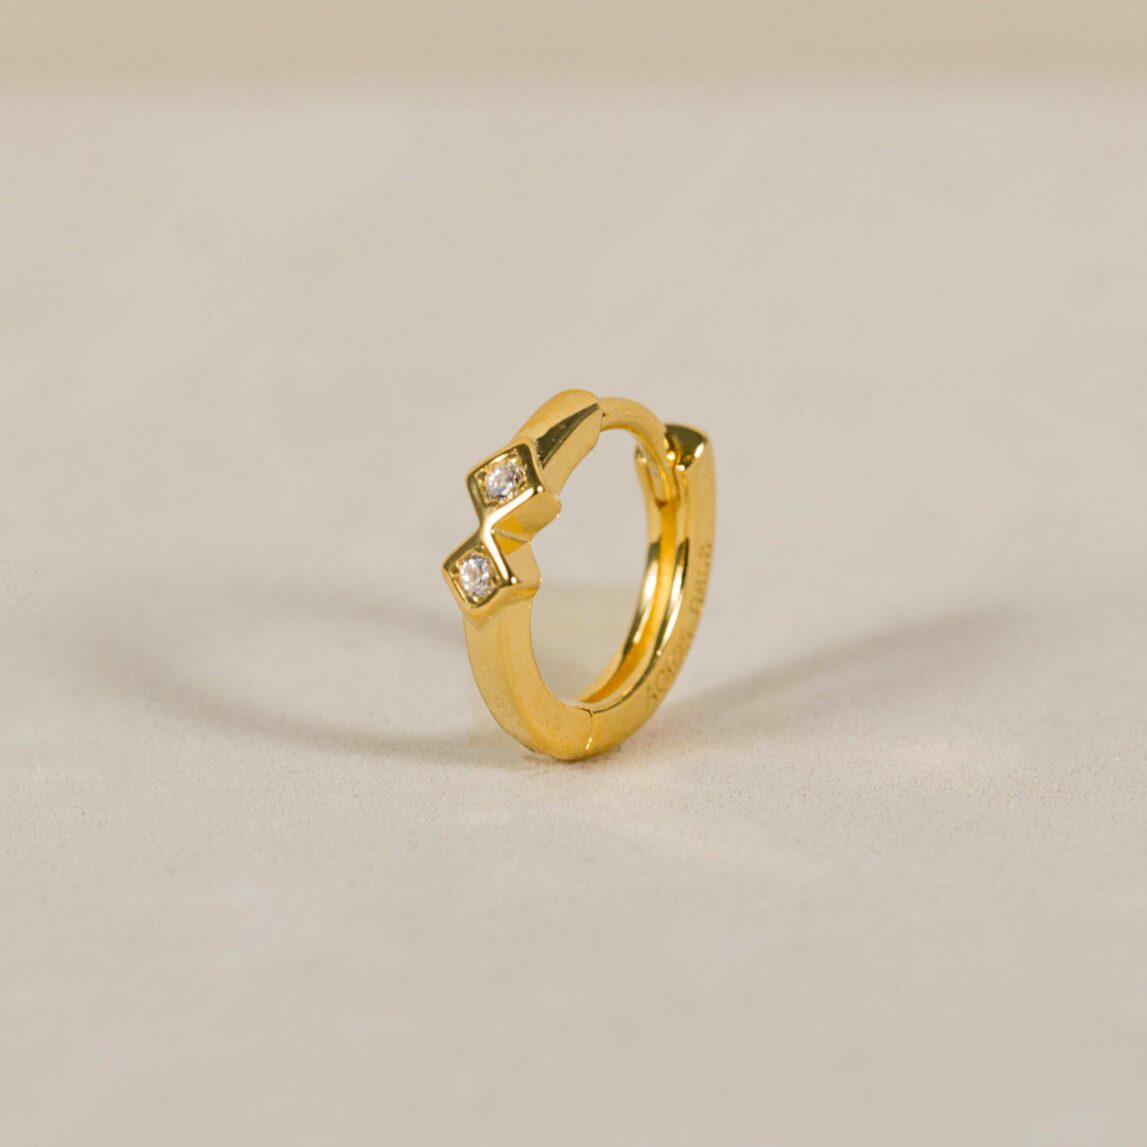 El mini aro Sofía es uno de los piercing de oreja más vendido de Darwin Collection, un aro pequeño de oro con circonitas blanca perfecto para tus piercings.